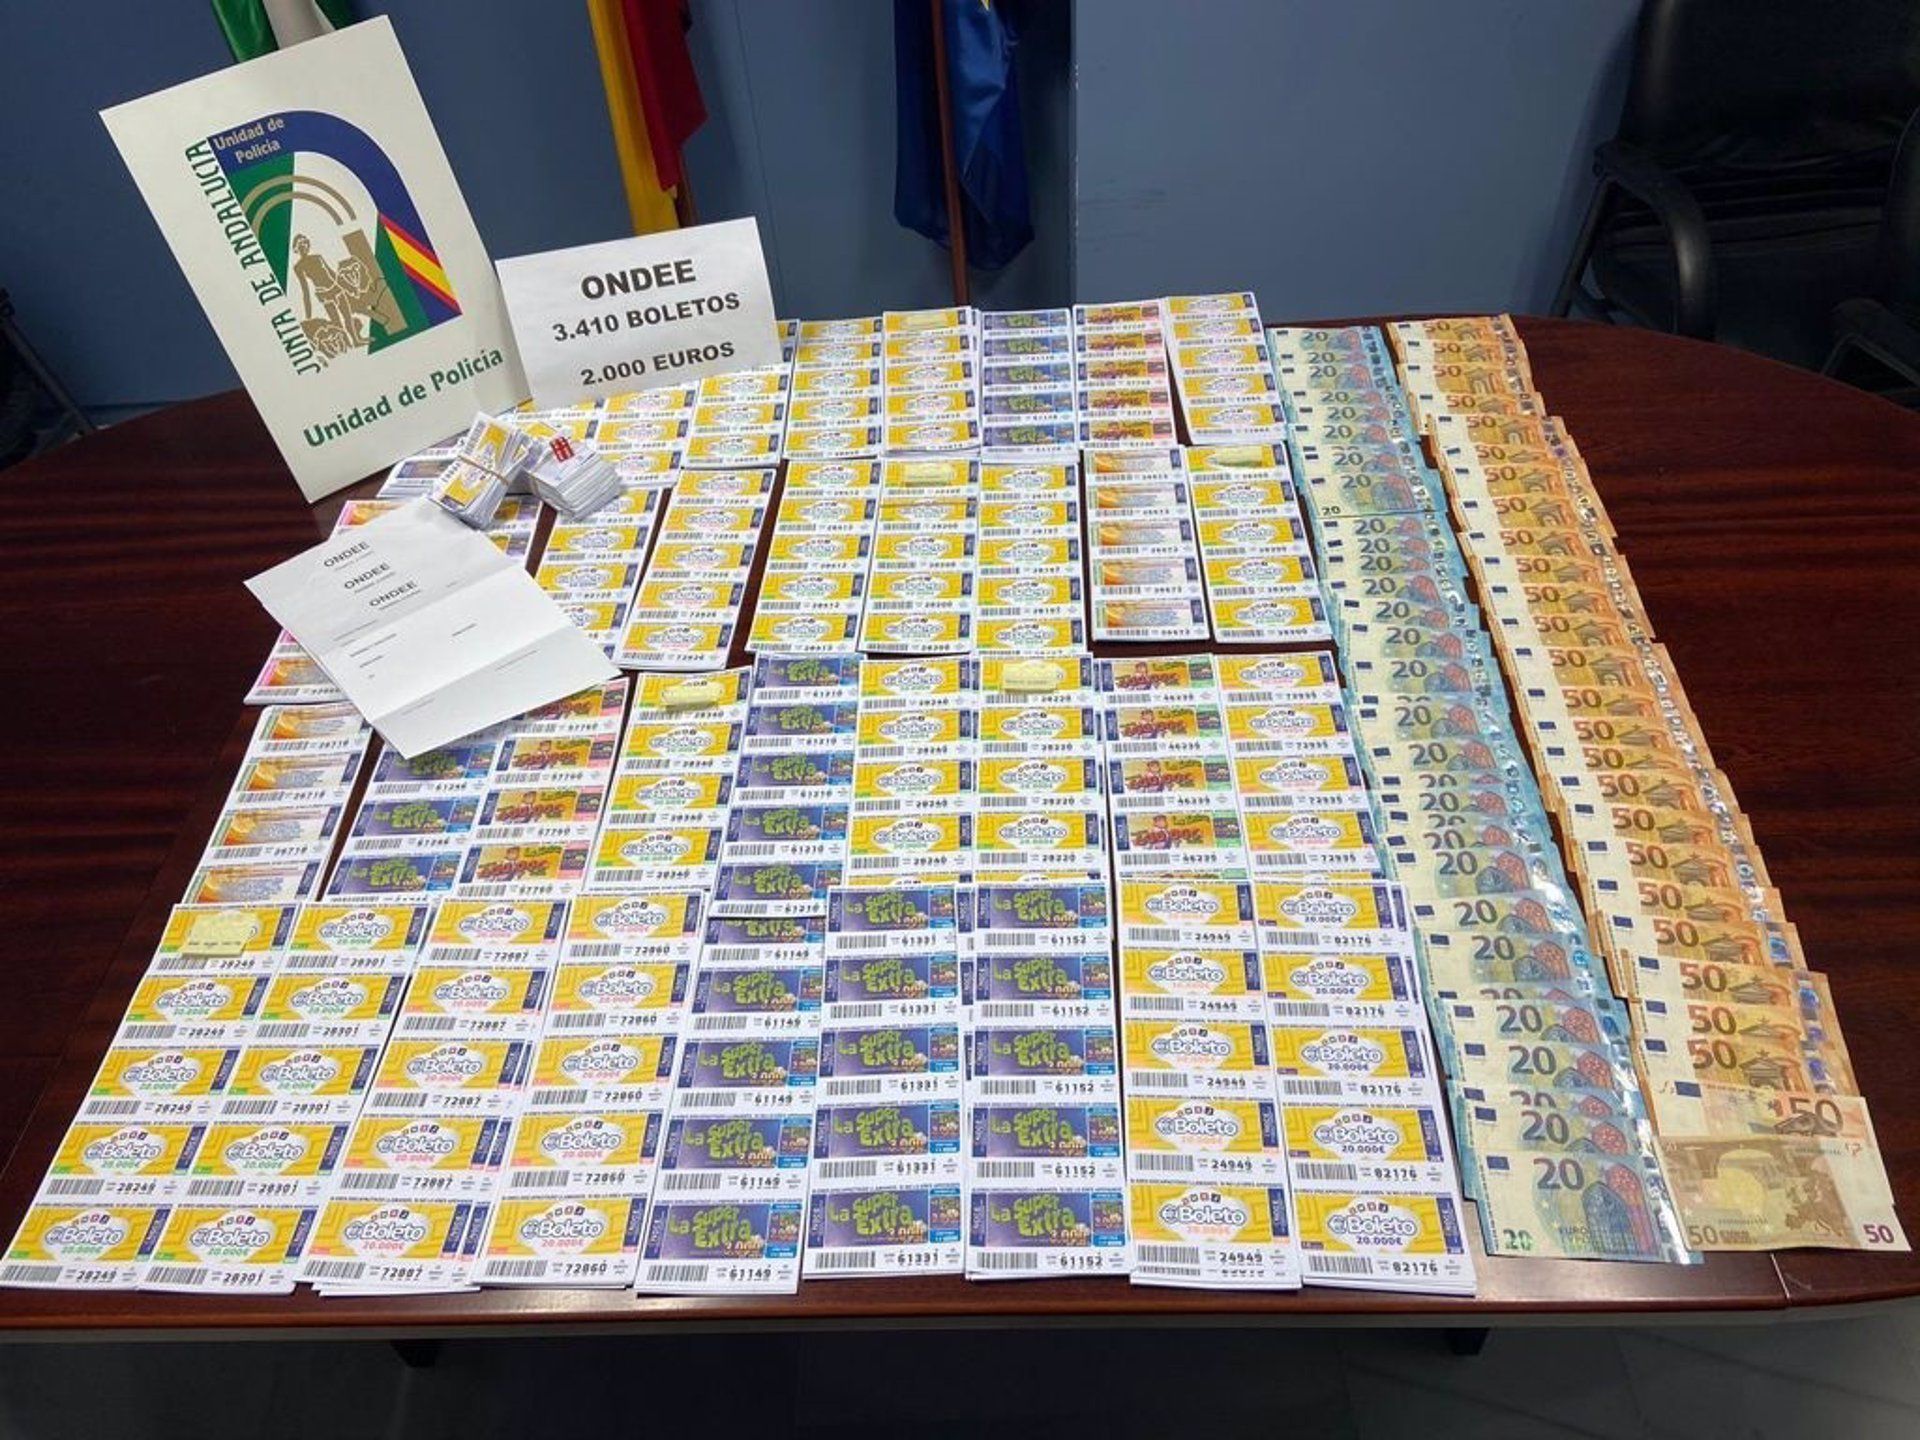 Más de 3.400 boletos ilegales y 2.000 euros por cupones premiados en Cádiz.